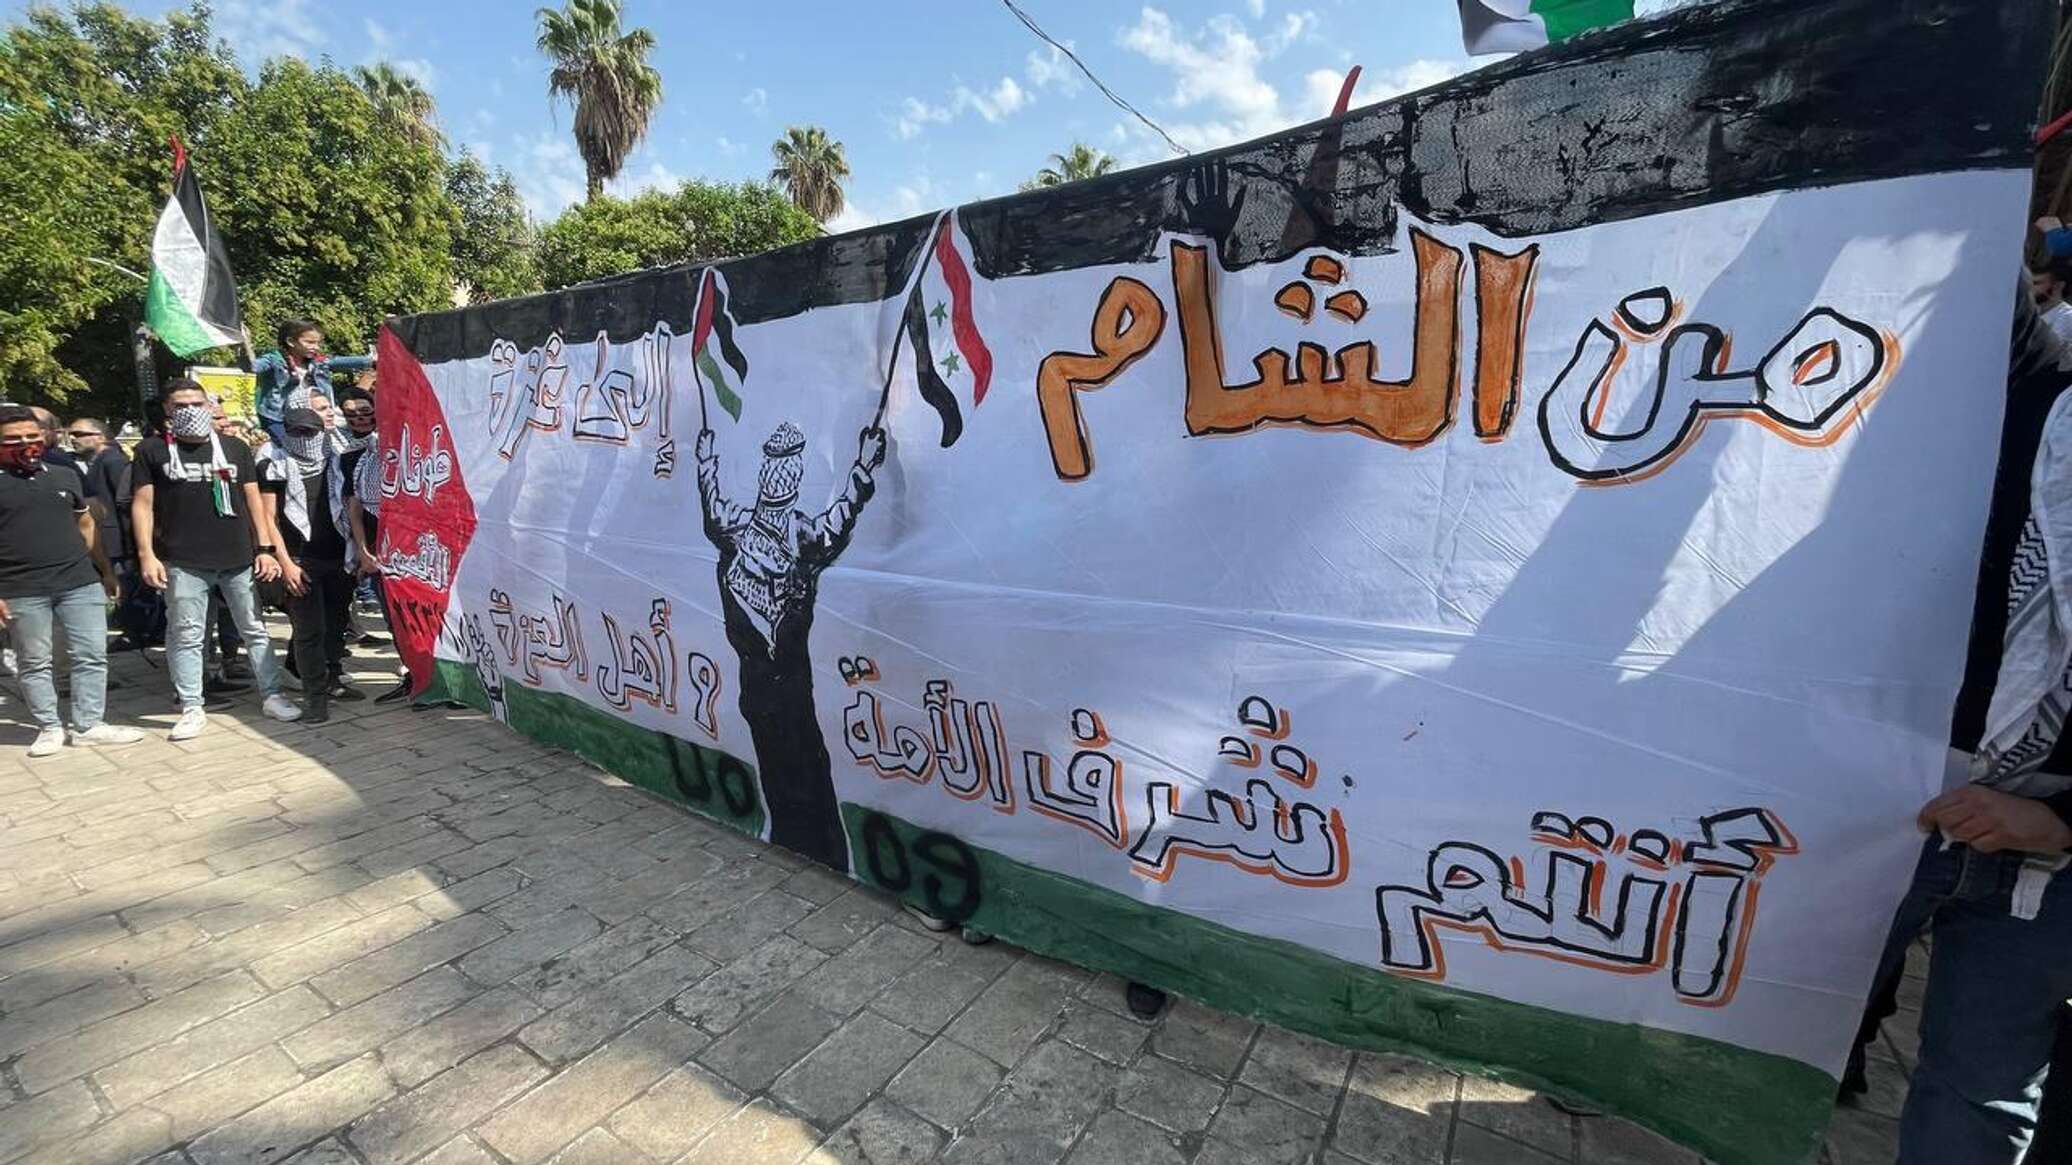 فلسطينيون وسوريون يطالبون بالمشاركة في معركة "طوفان الأقصى"